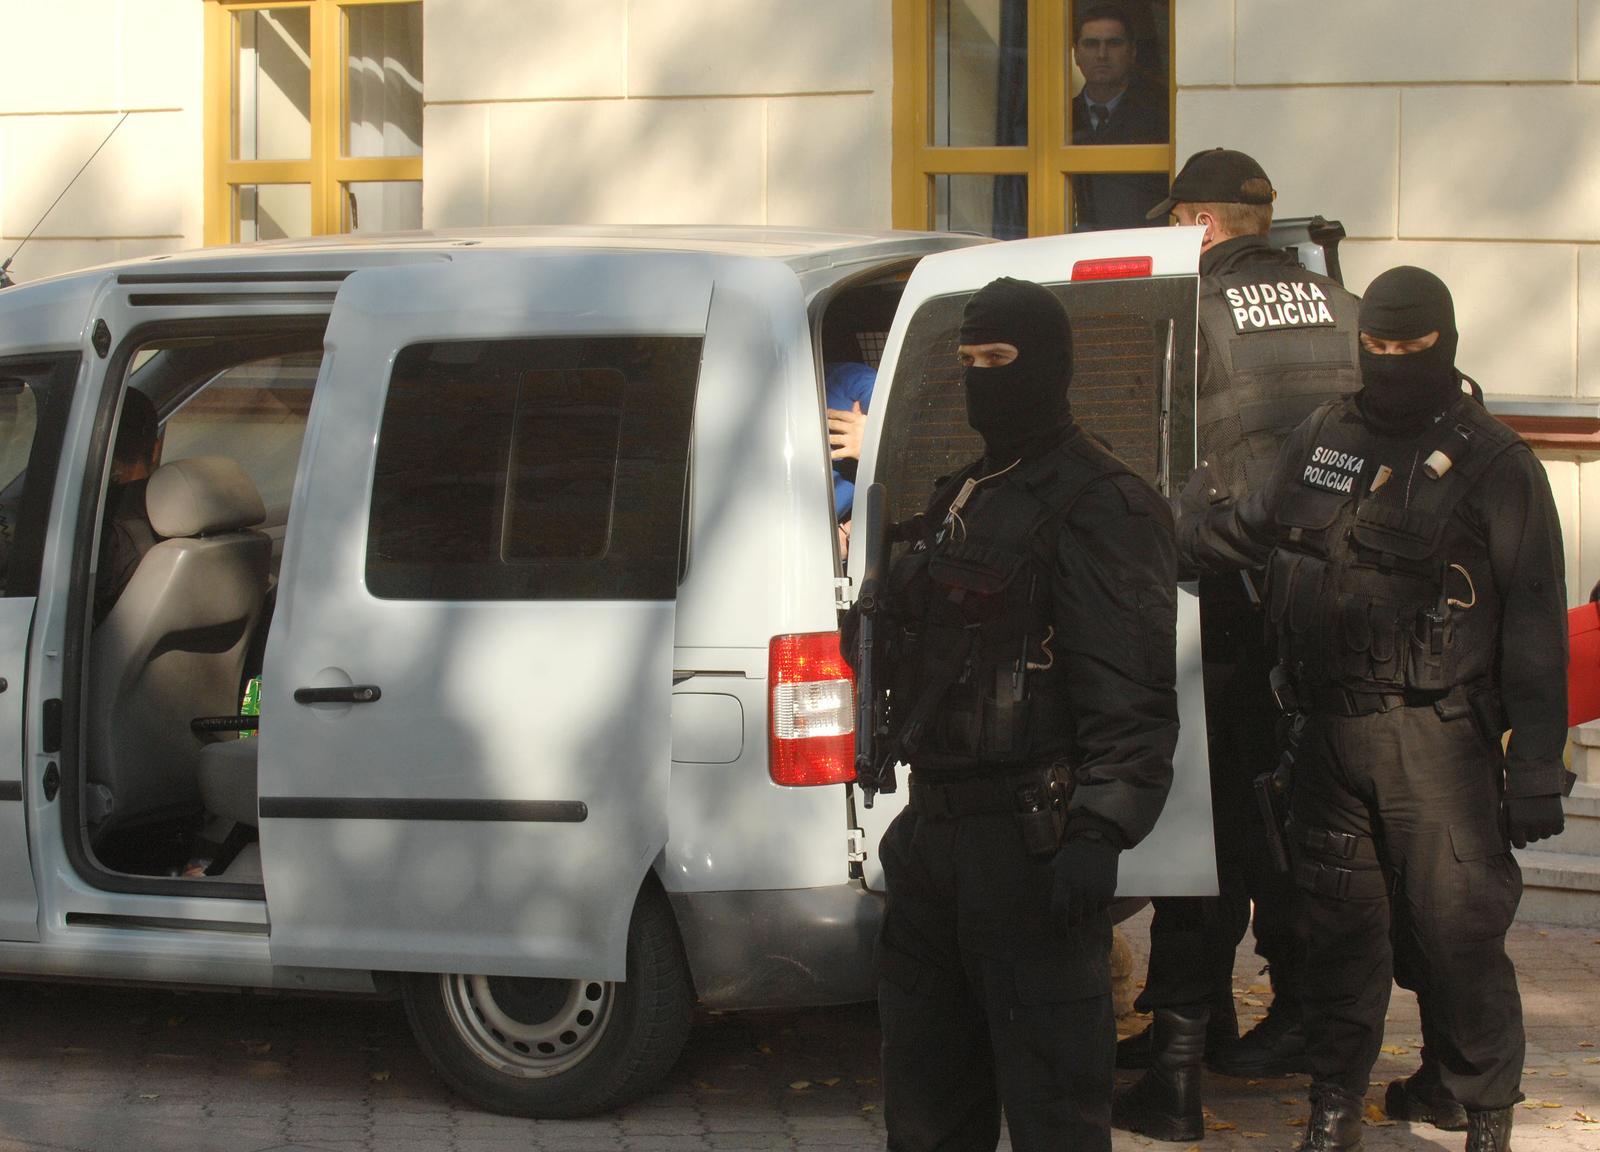 26.10.2009., Mostar - Policija je na Zupanijski sud u Mostaru dovela Ediba Buljubasica, bivseg porucnika HOS-a, svjedoka ubojstva Blaza Kraljevica. rPhoto: Zoran Grizelj/VLM/PIXSELL